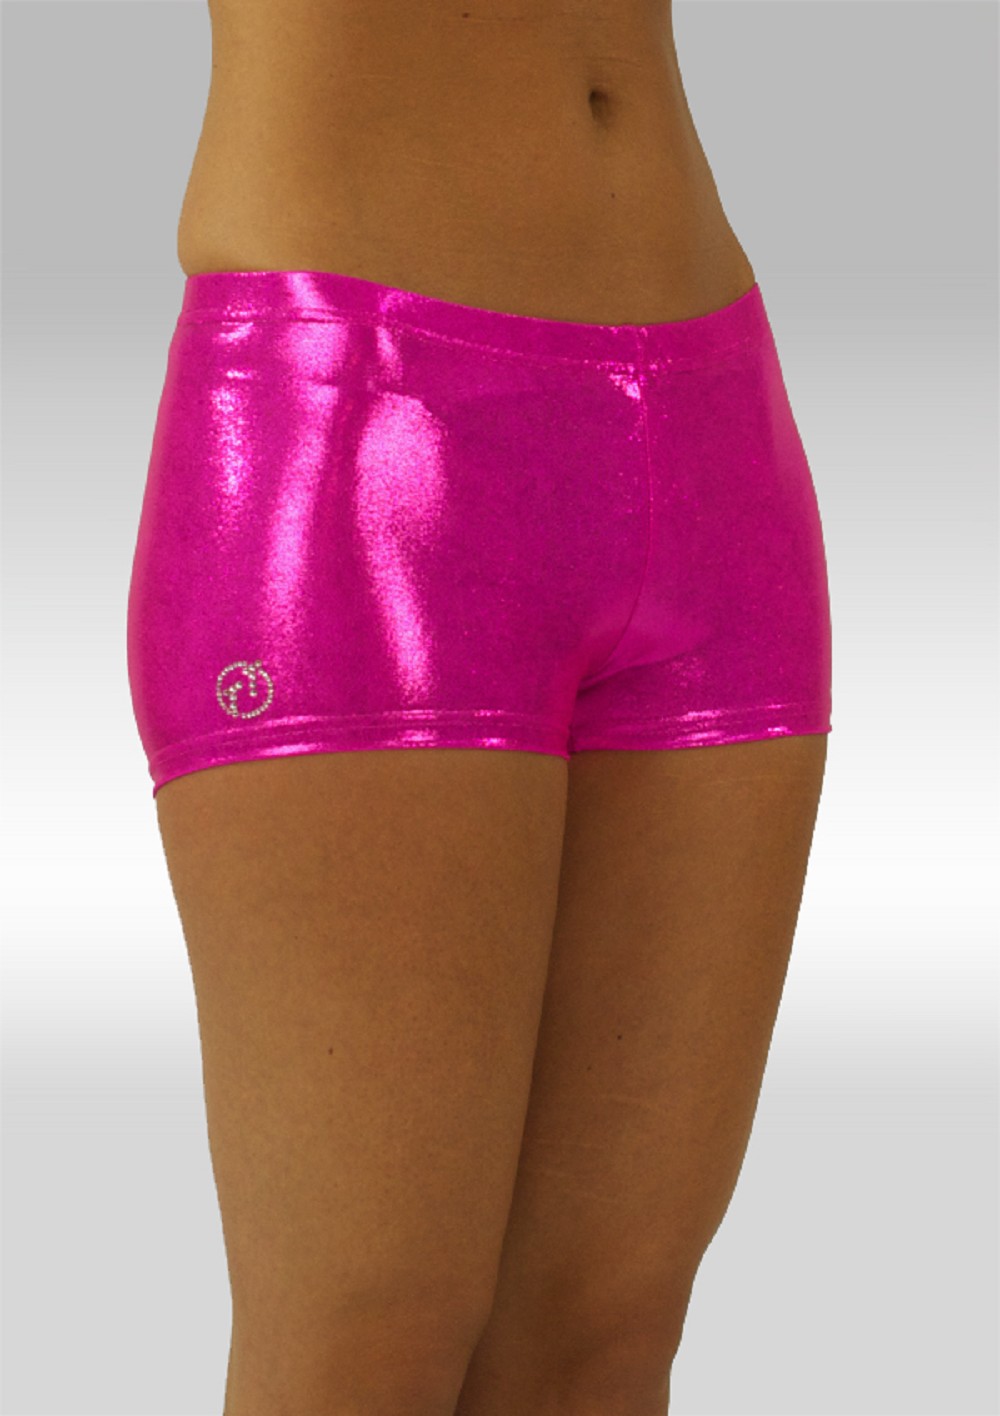 maniac Analytisch ras Hotpants roze wetlook W758rz | TT-Gymnastics